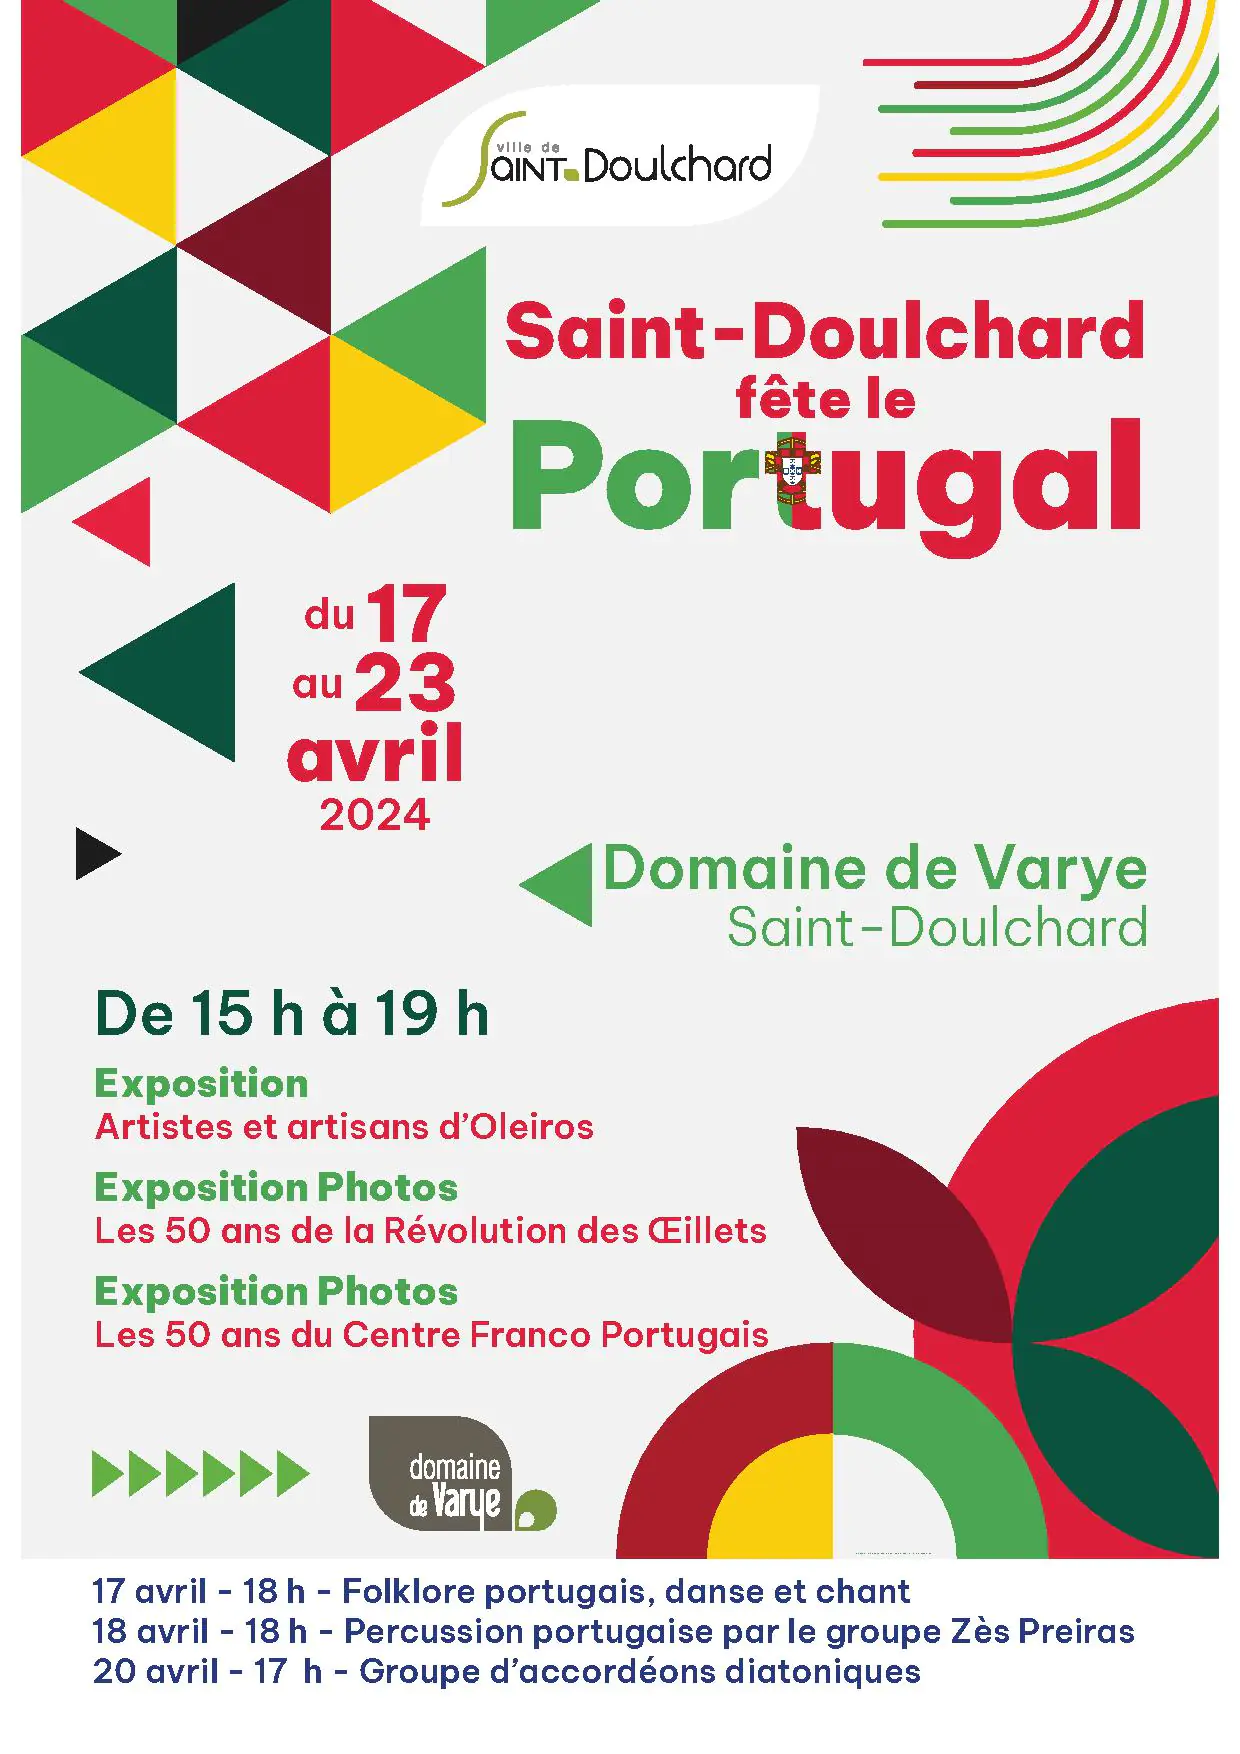 Saint-Doulchard fête le Potugal